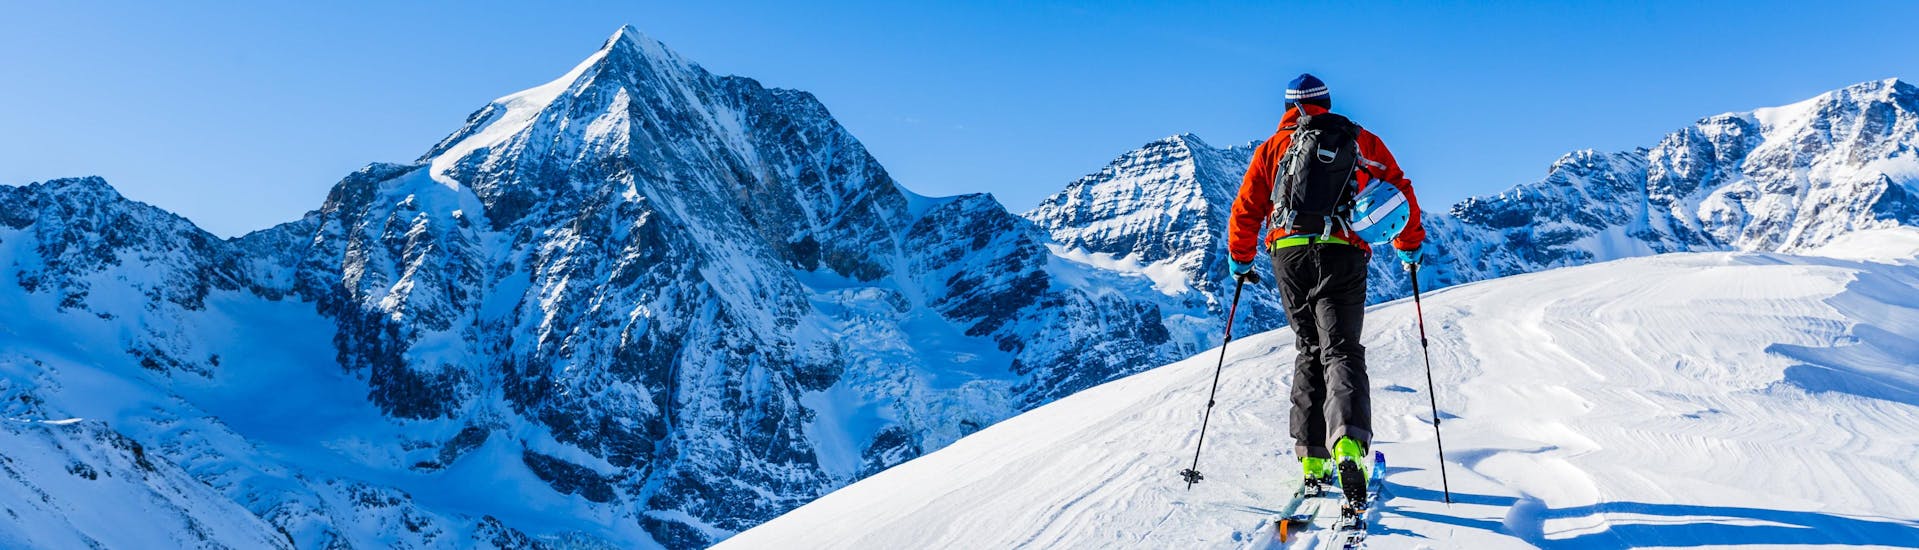 Ein Mann erkundet bei seiner Skitour die verschneite Berglandschaft.